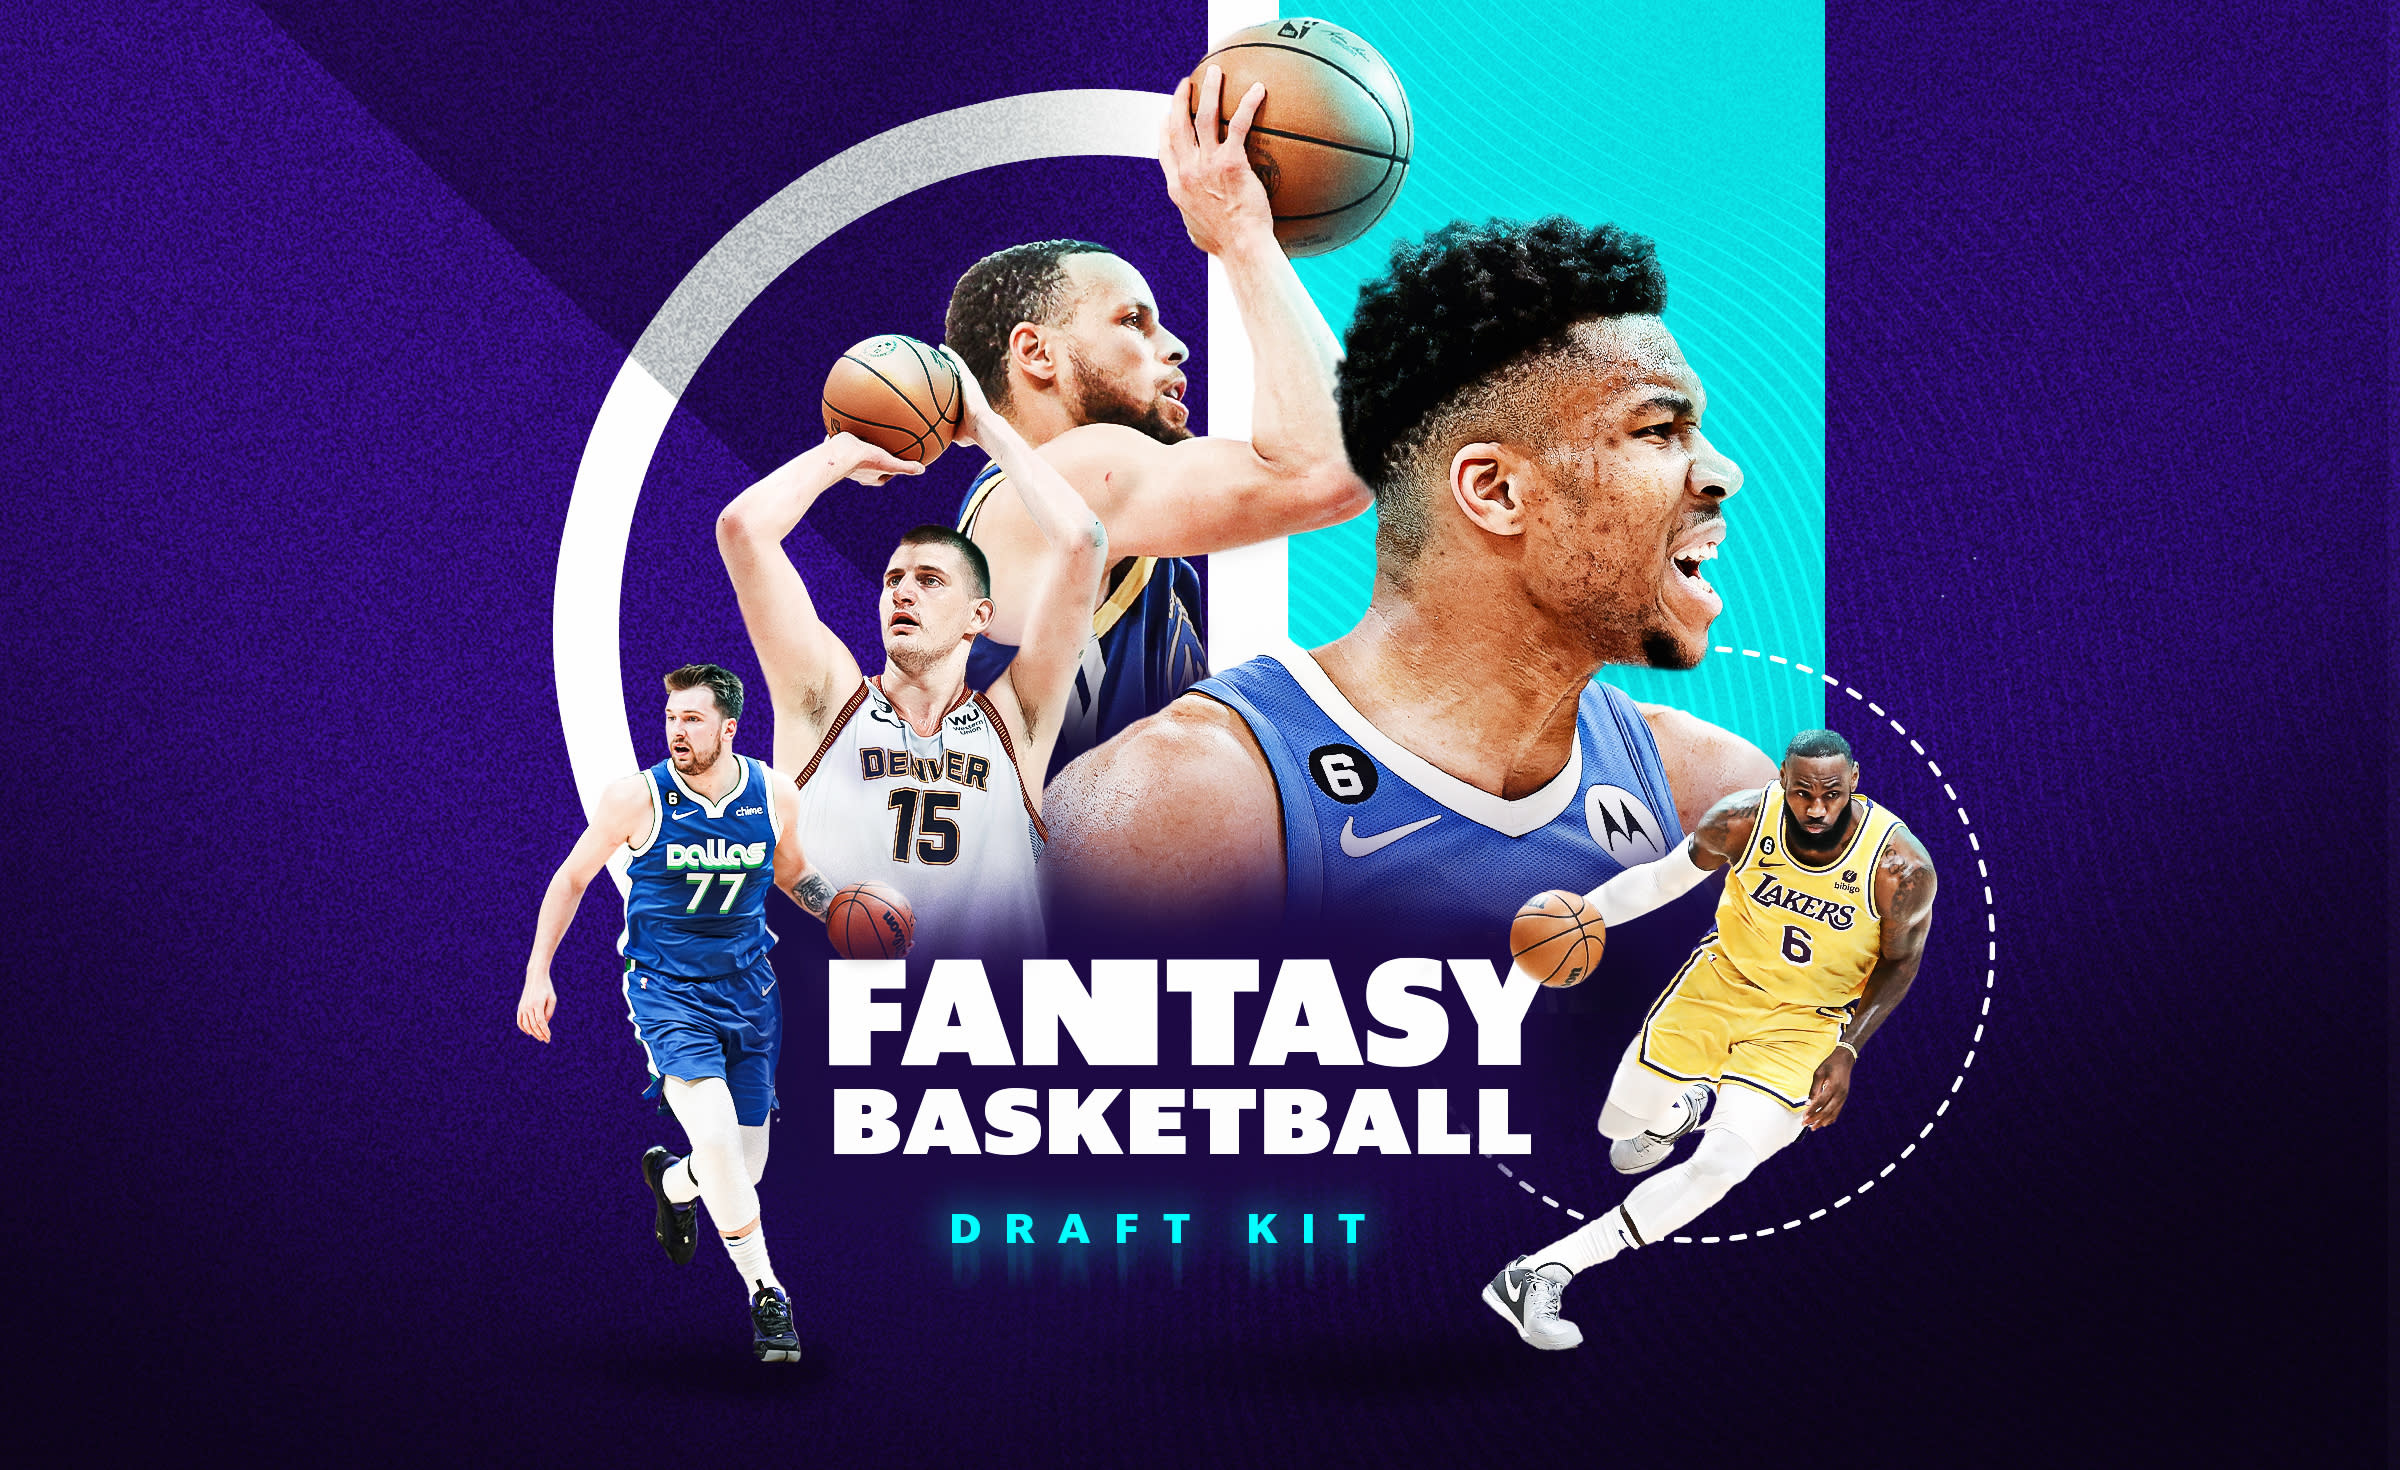 Fantasy Basketball - Leagues, Rankings, News, Picks & More